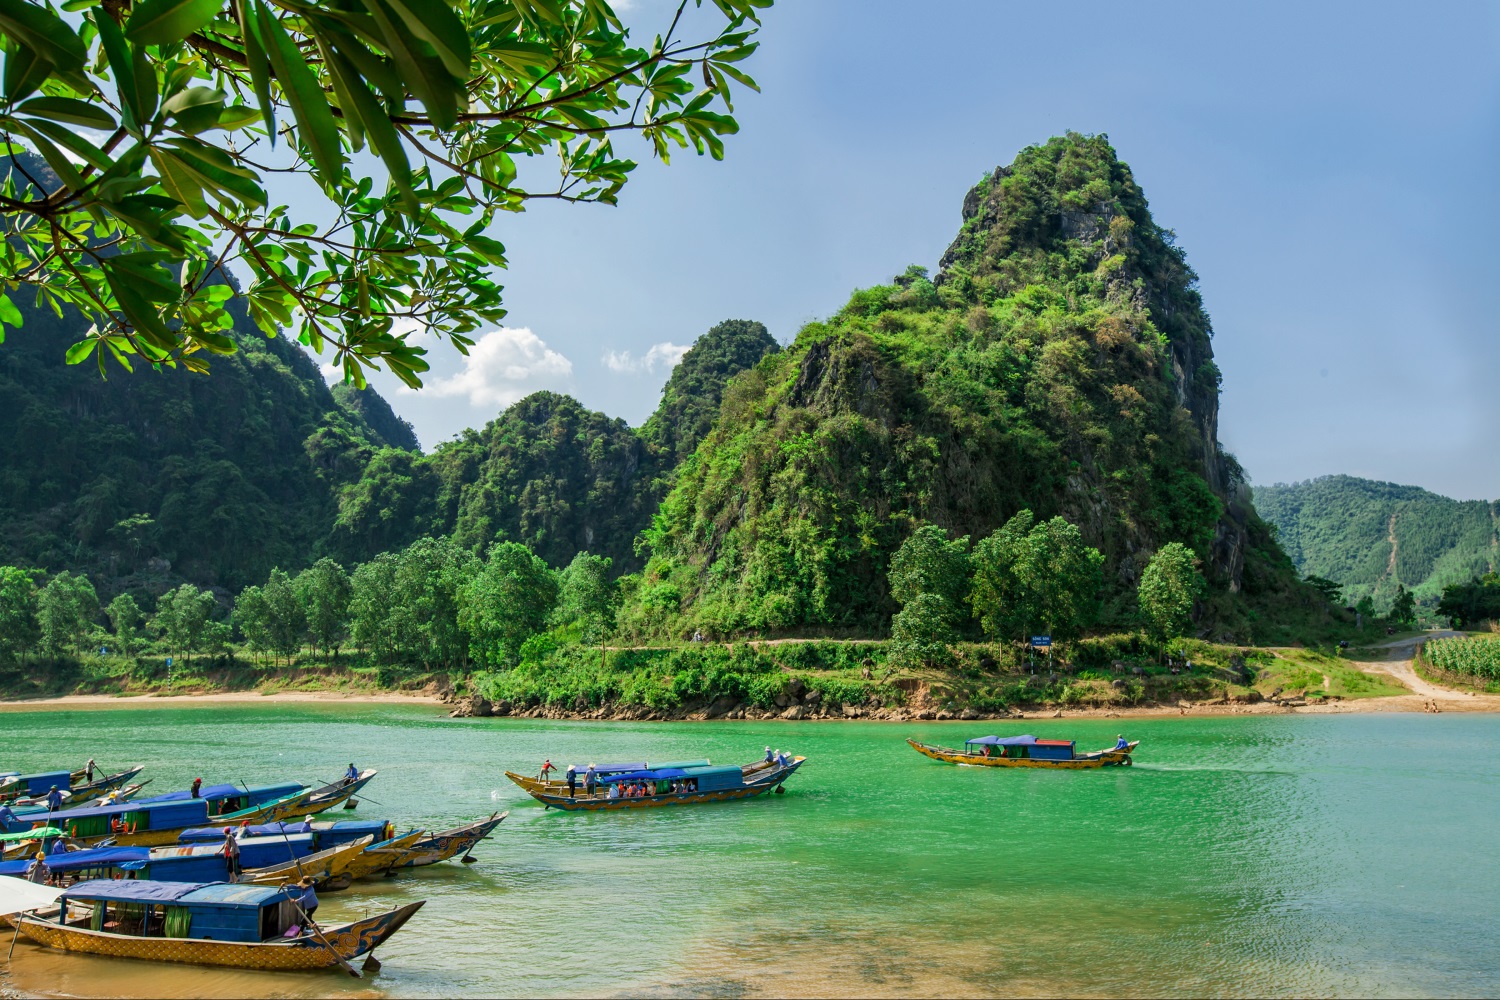 Boats on the river at Phong Nha-Ke National Park